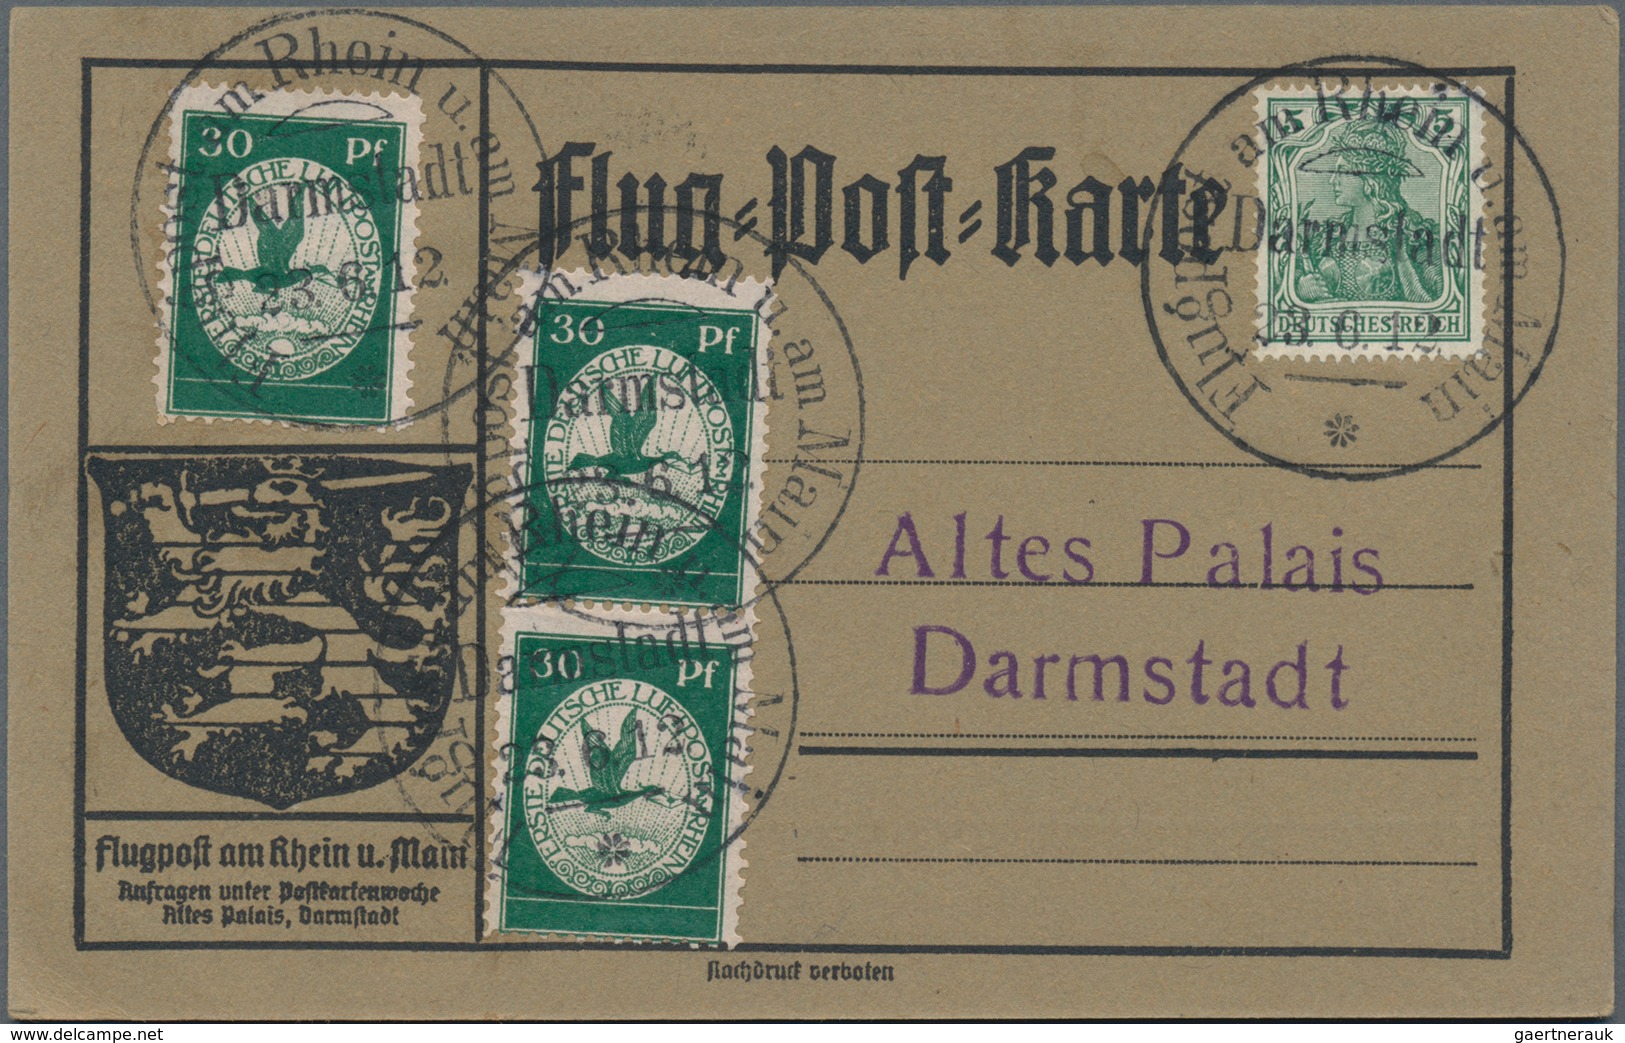 Deutsches Reich: 1912/1939, Partie von ca. 124 Flug- und Zeppelinbelegen ab Rhein/Main 1912 (incl. G